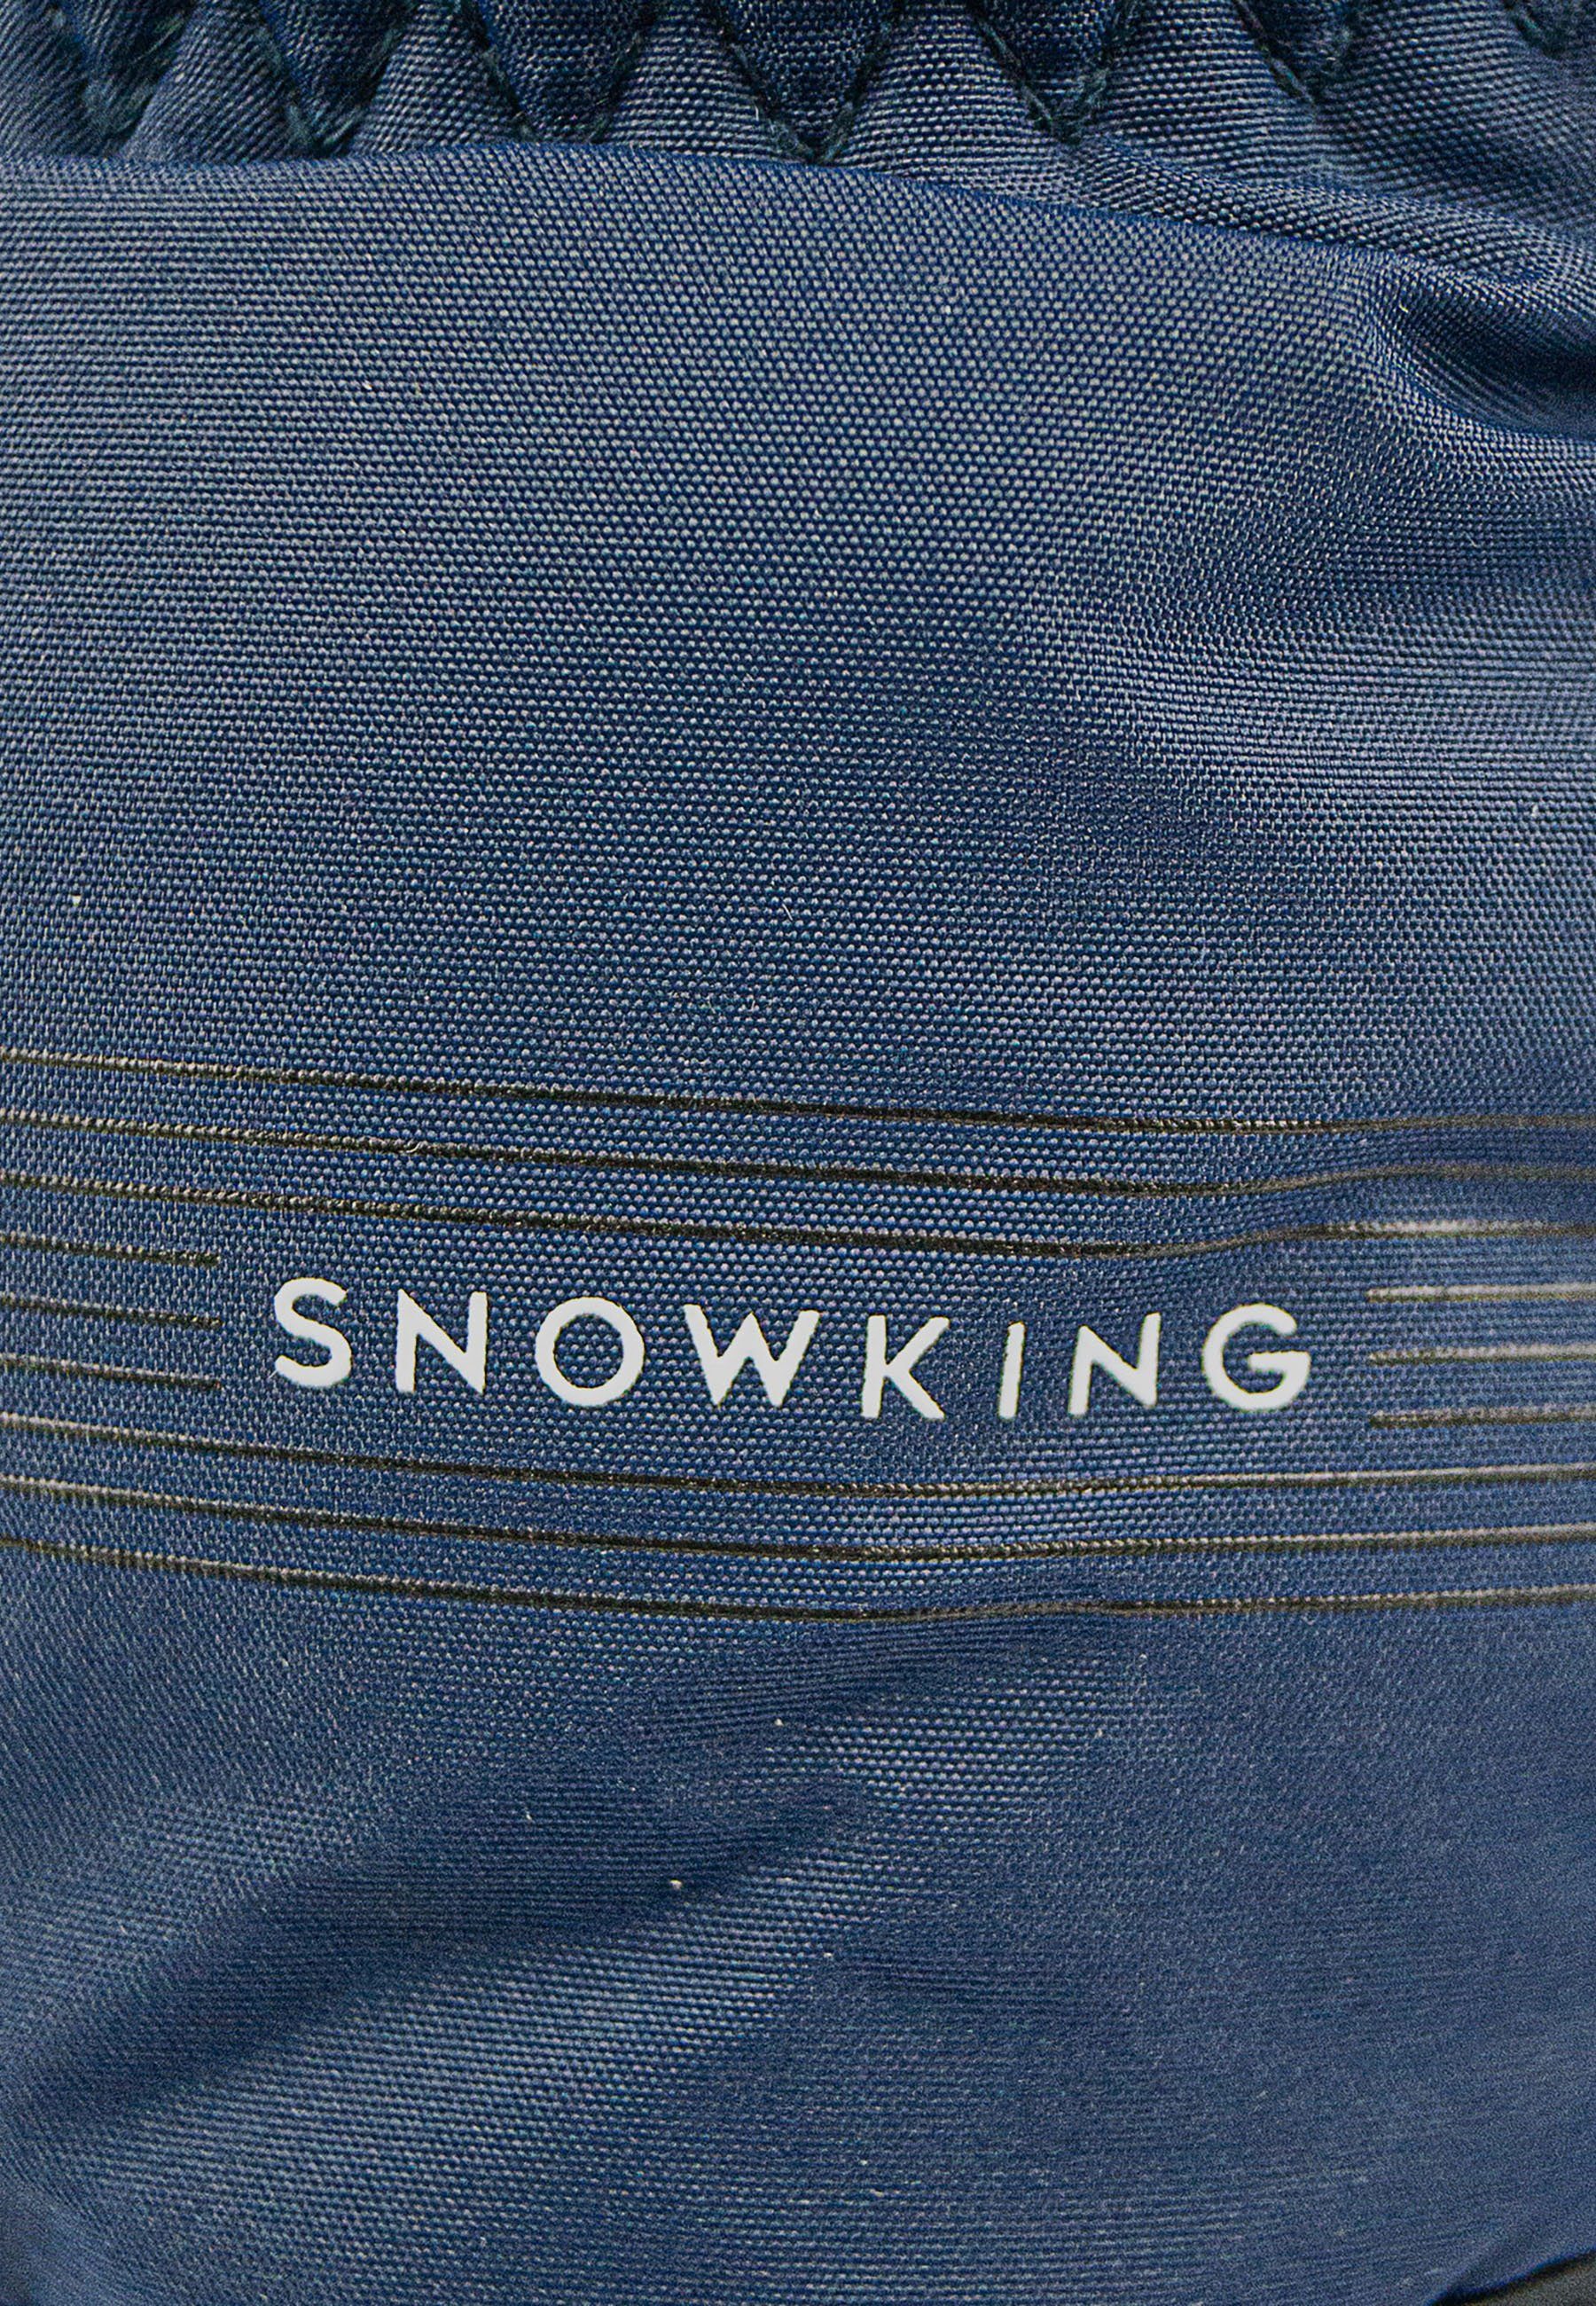 Snow Skihandschuhe atmungsaktivem aus Reusch blau-schwarz King Material